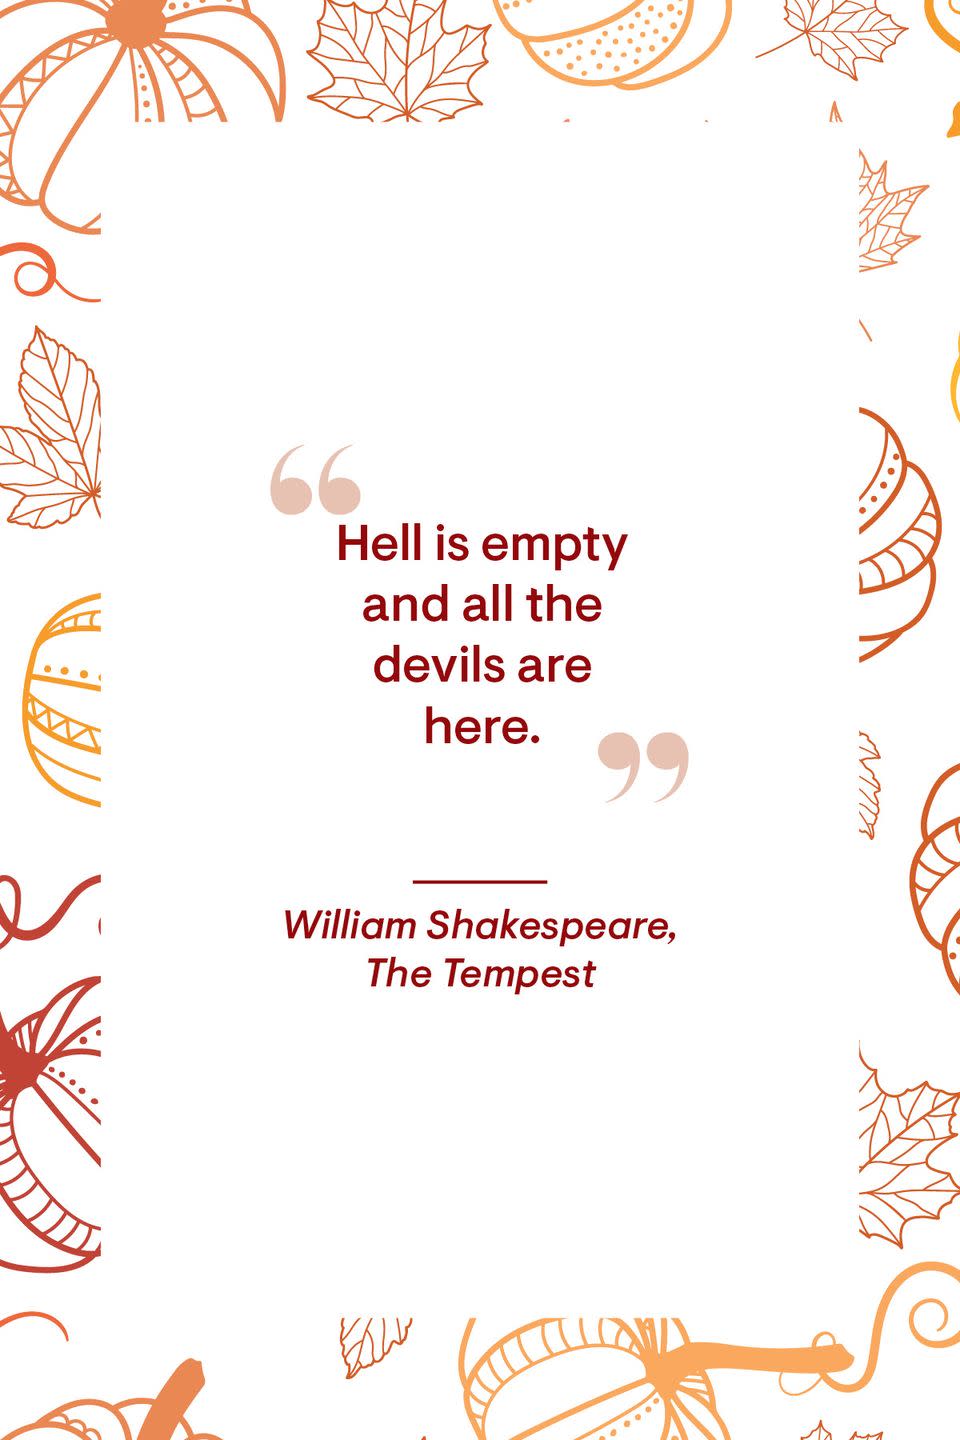 10) William Shakespeare